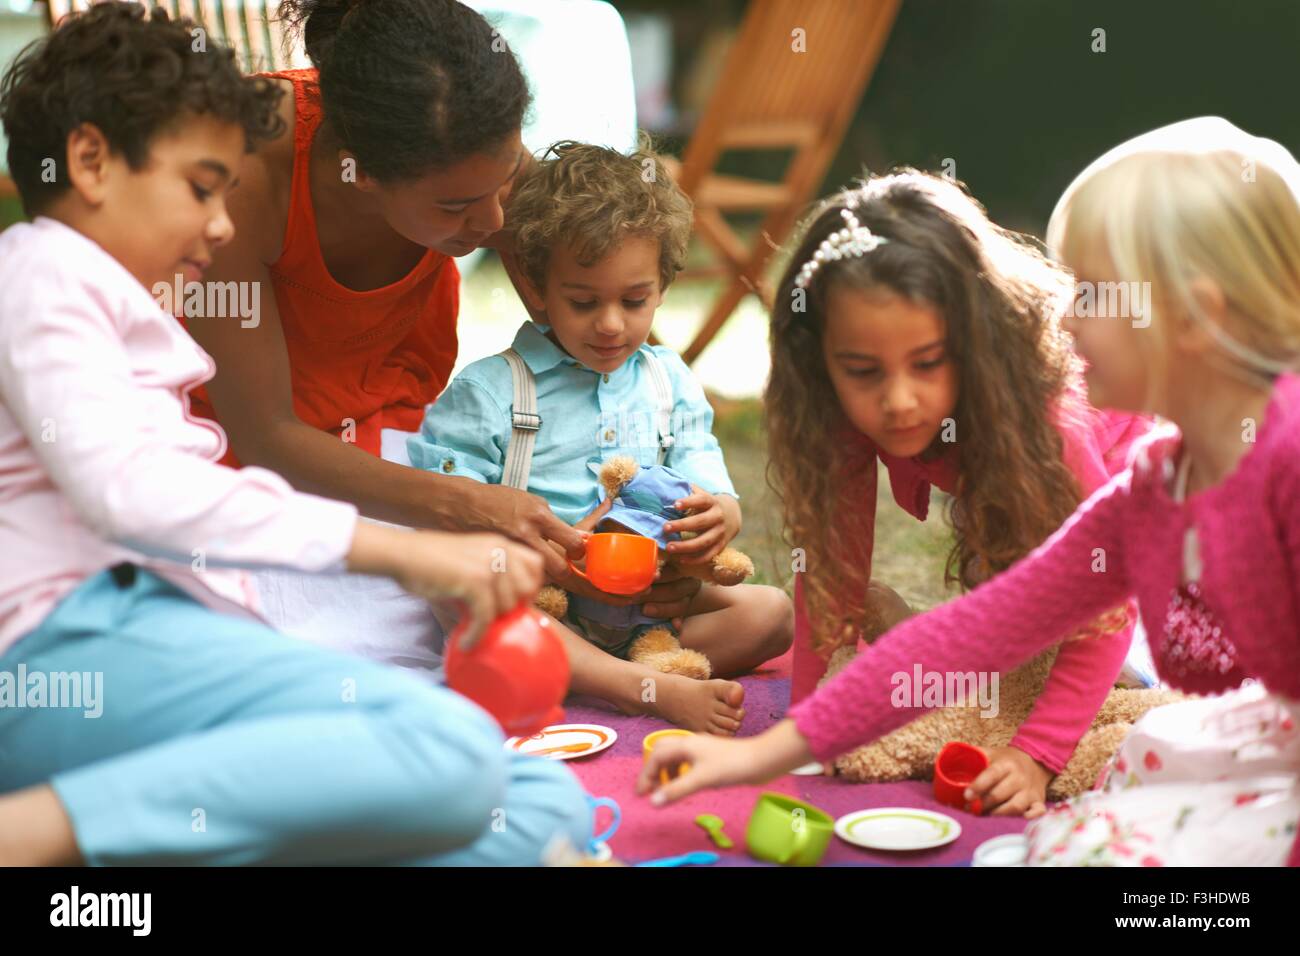 Madre y cuatro niños jugando picnics en el jardín fiesta de cumpleaños Foto de stock